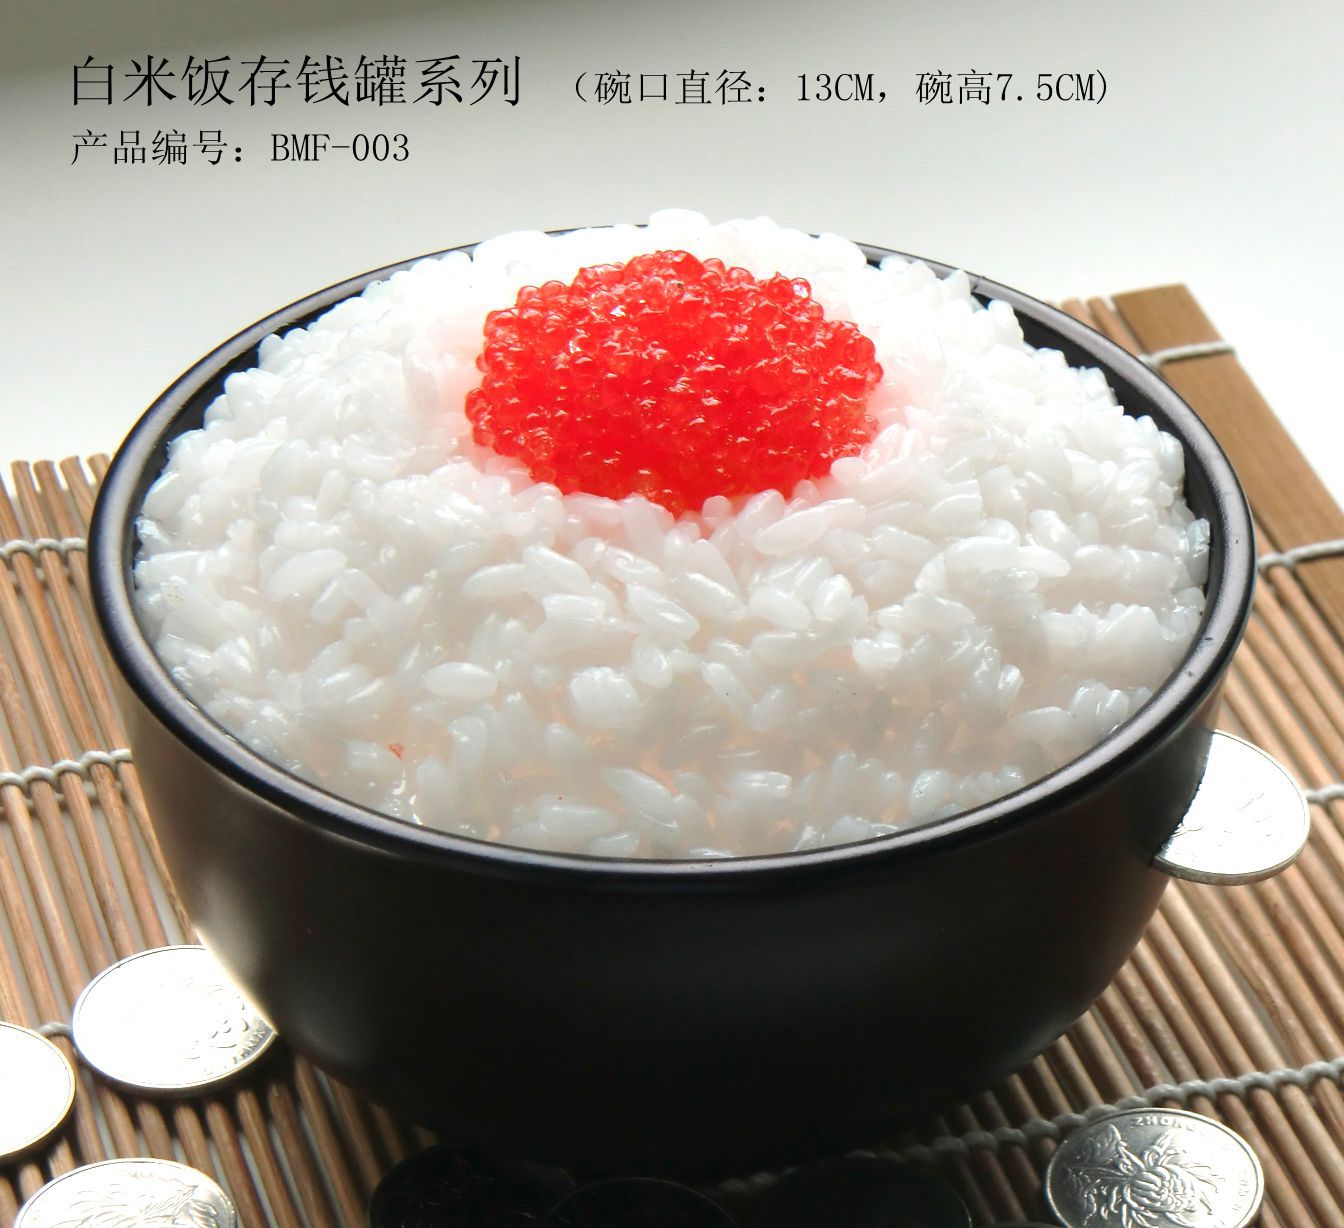 白米饭存钱罐（BMF-003）